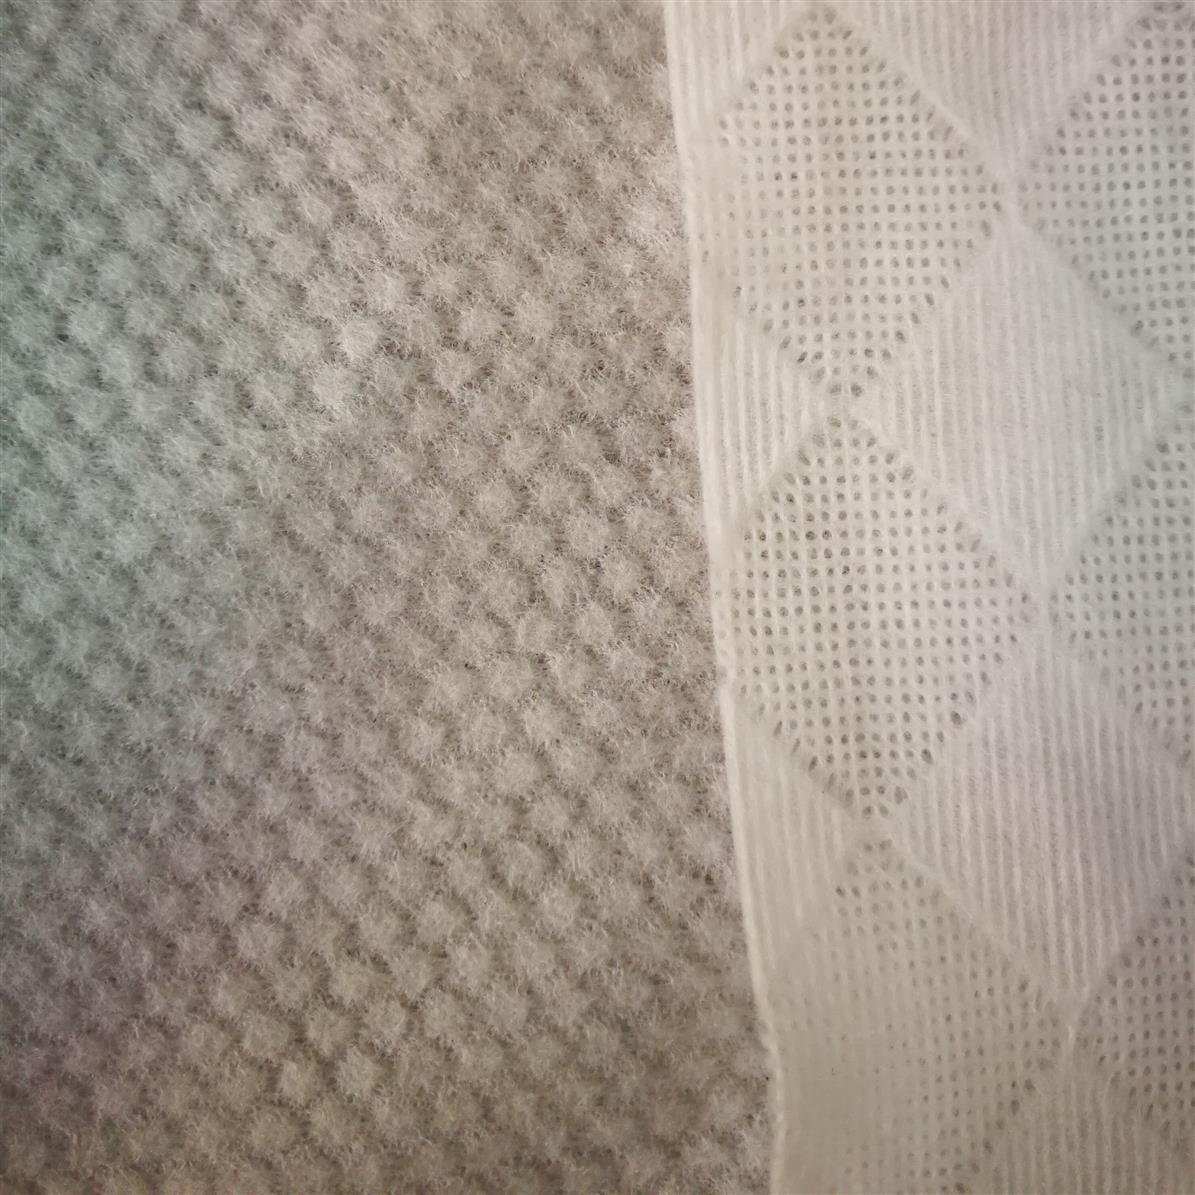 水刺布 10目竹纤维水刺无纺布厂商 竹纤维珍珠纹湿巾布